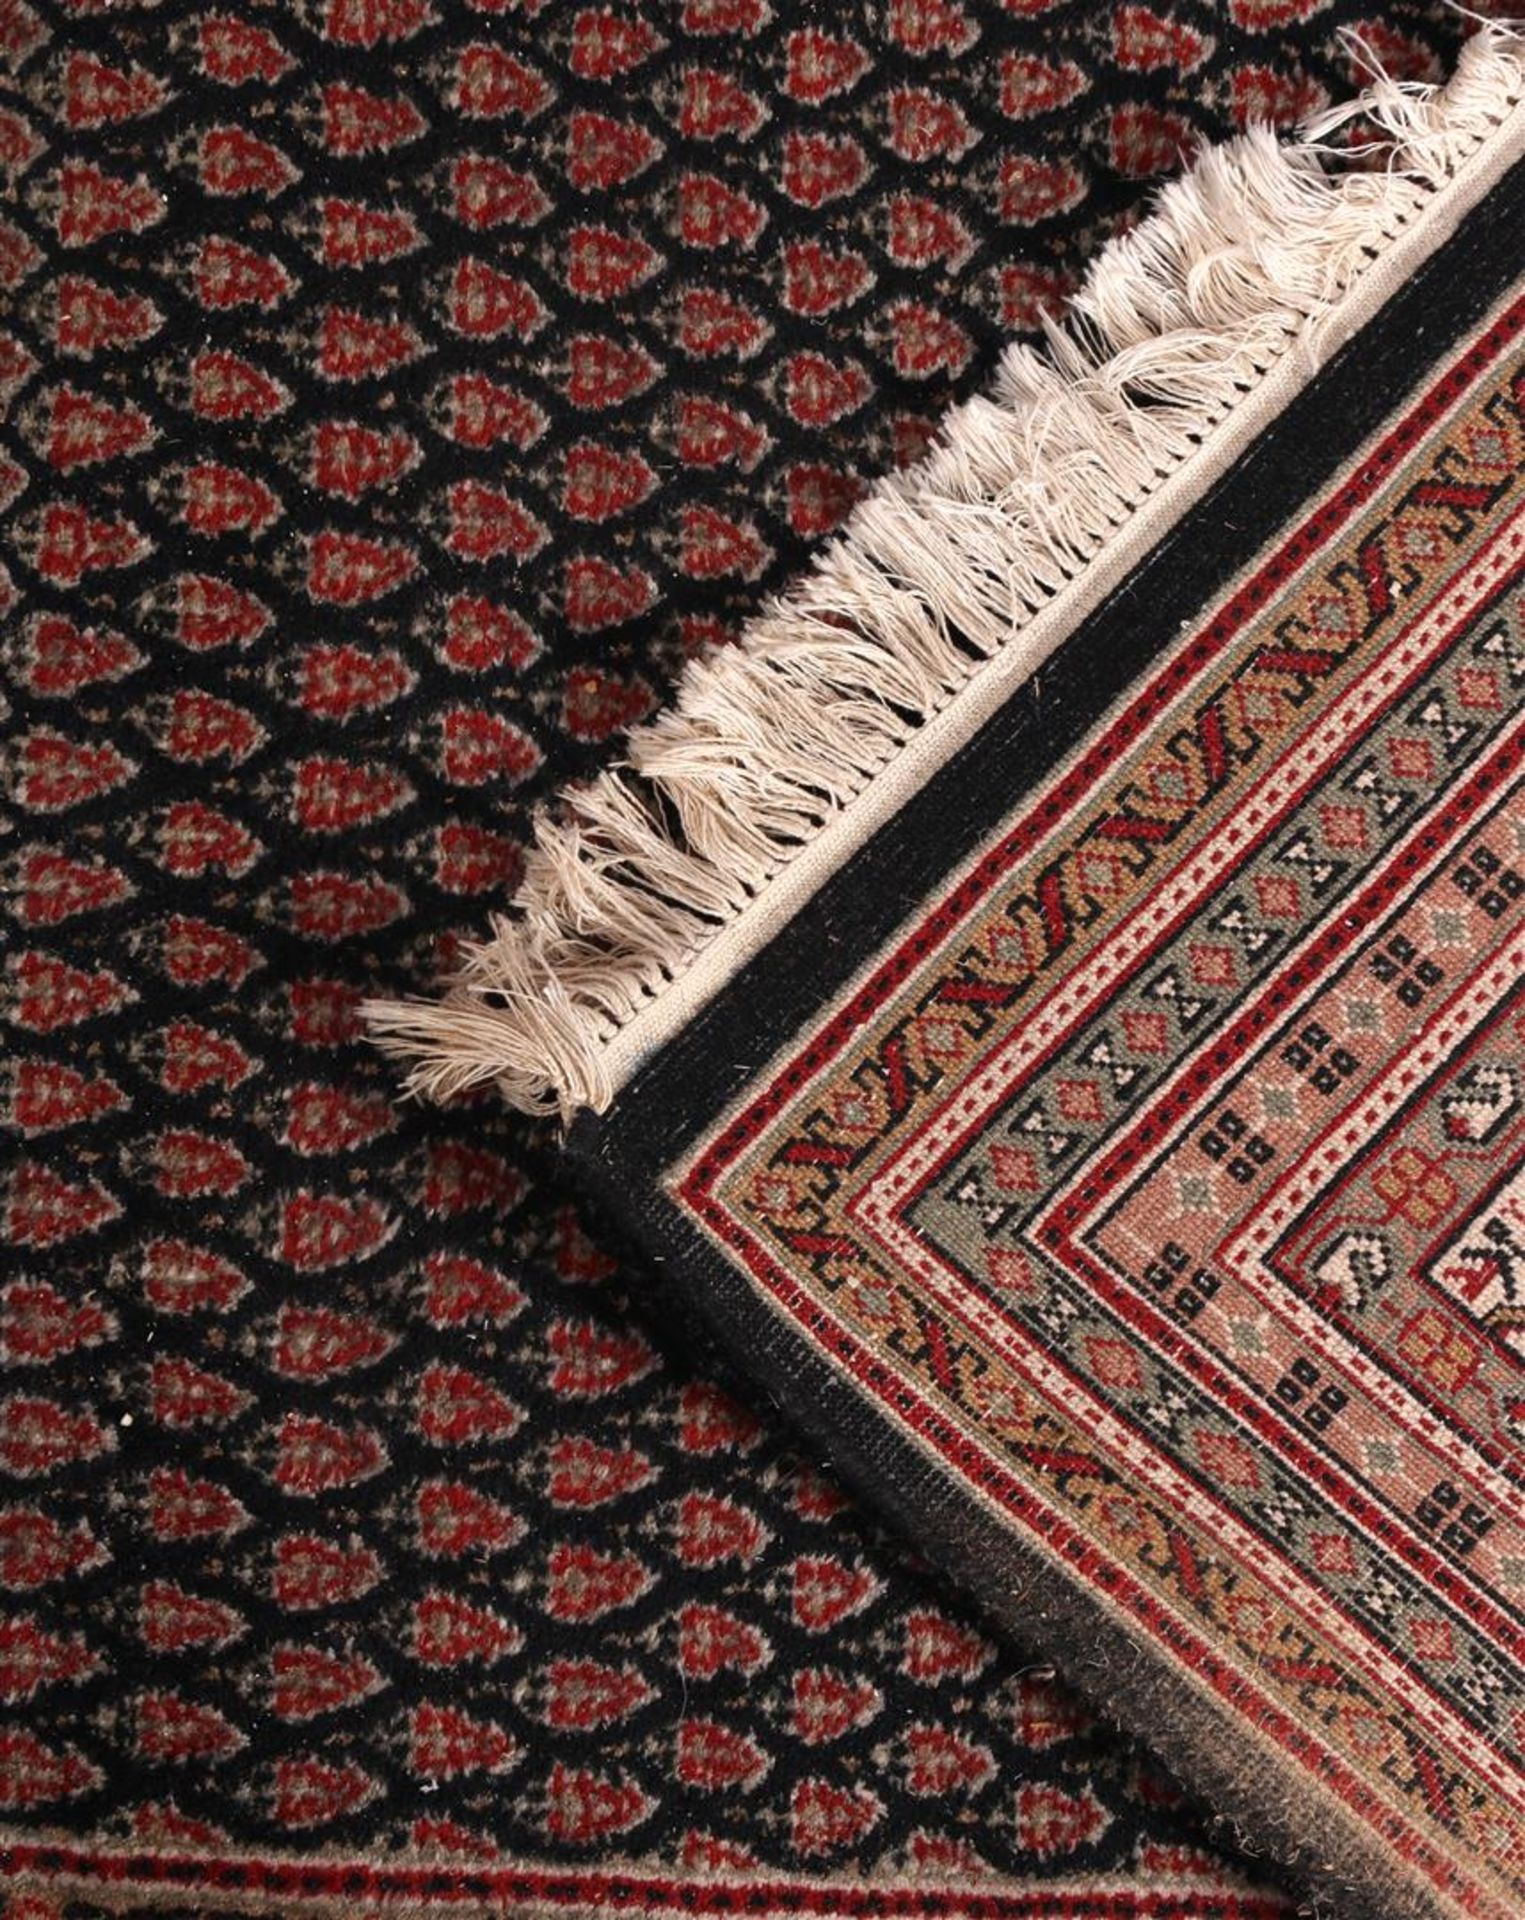 Hand-knotted wool carpet, Mihr - Bild 4 aus 4